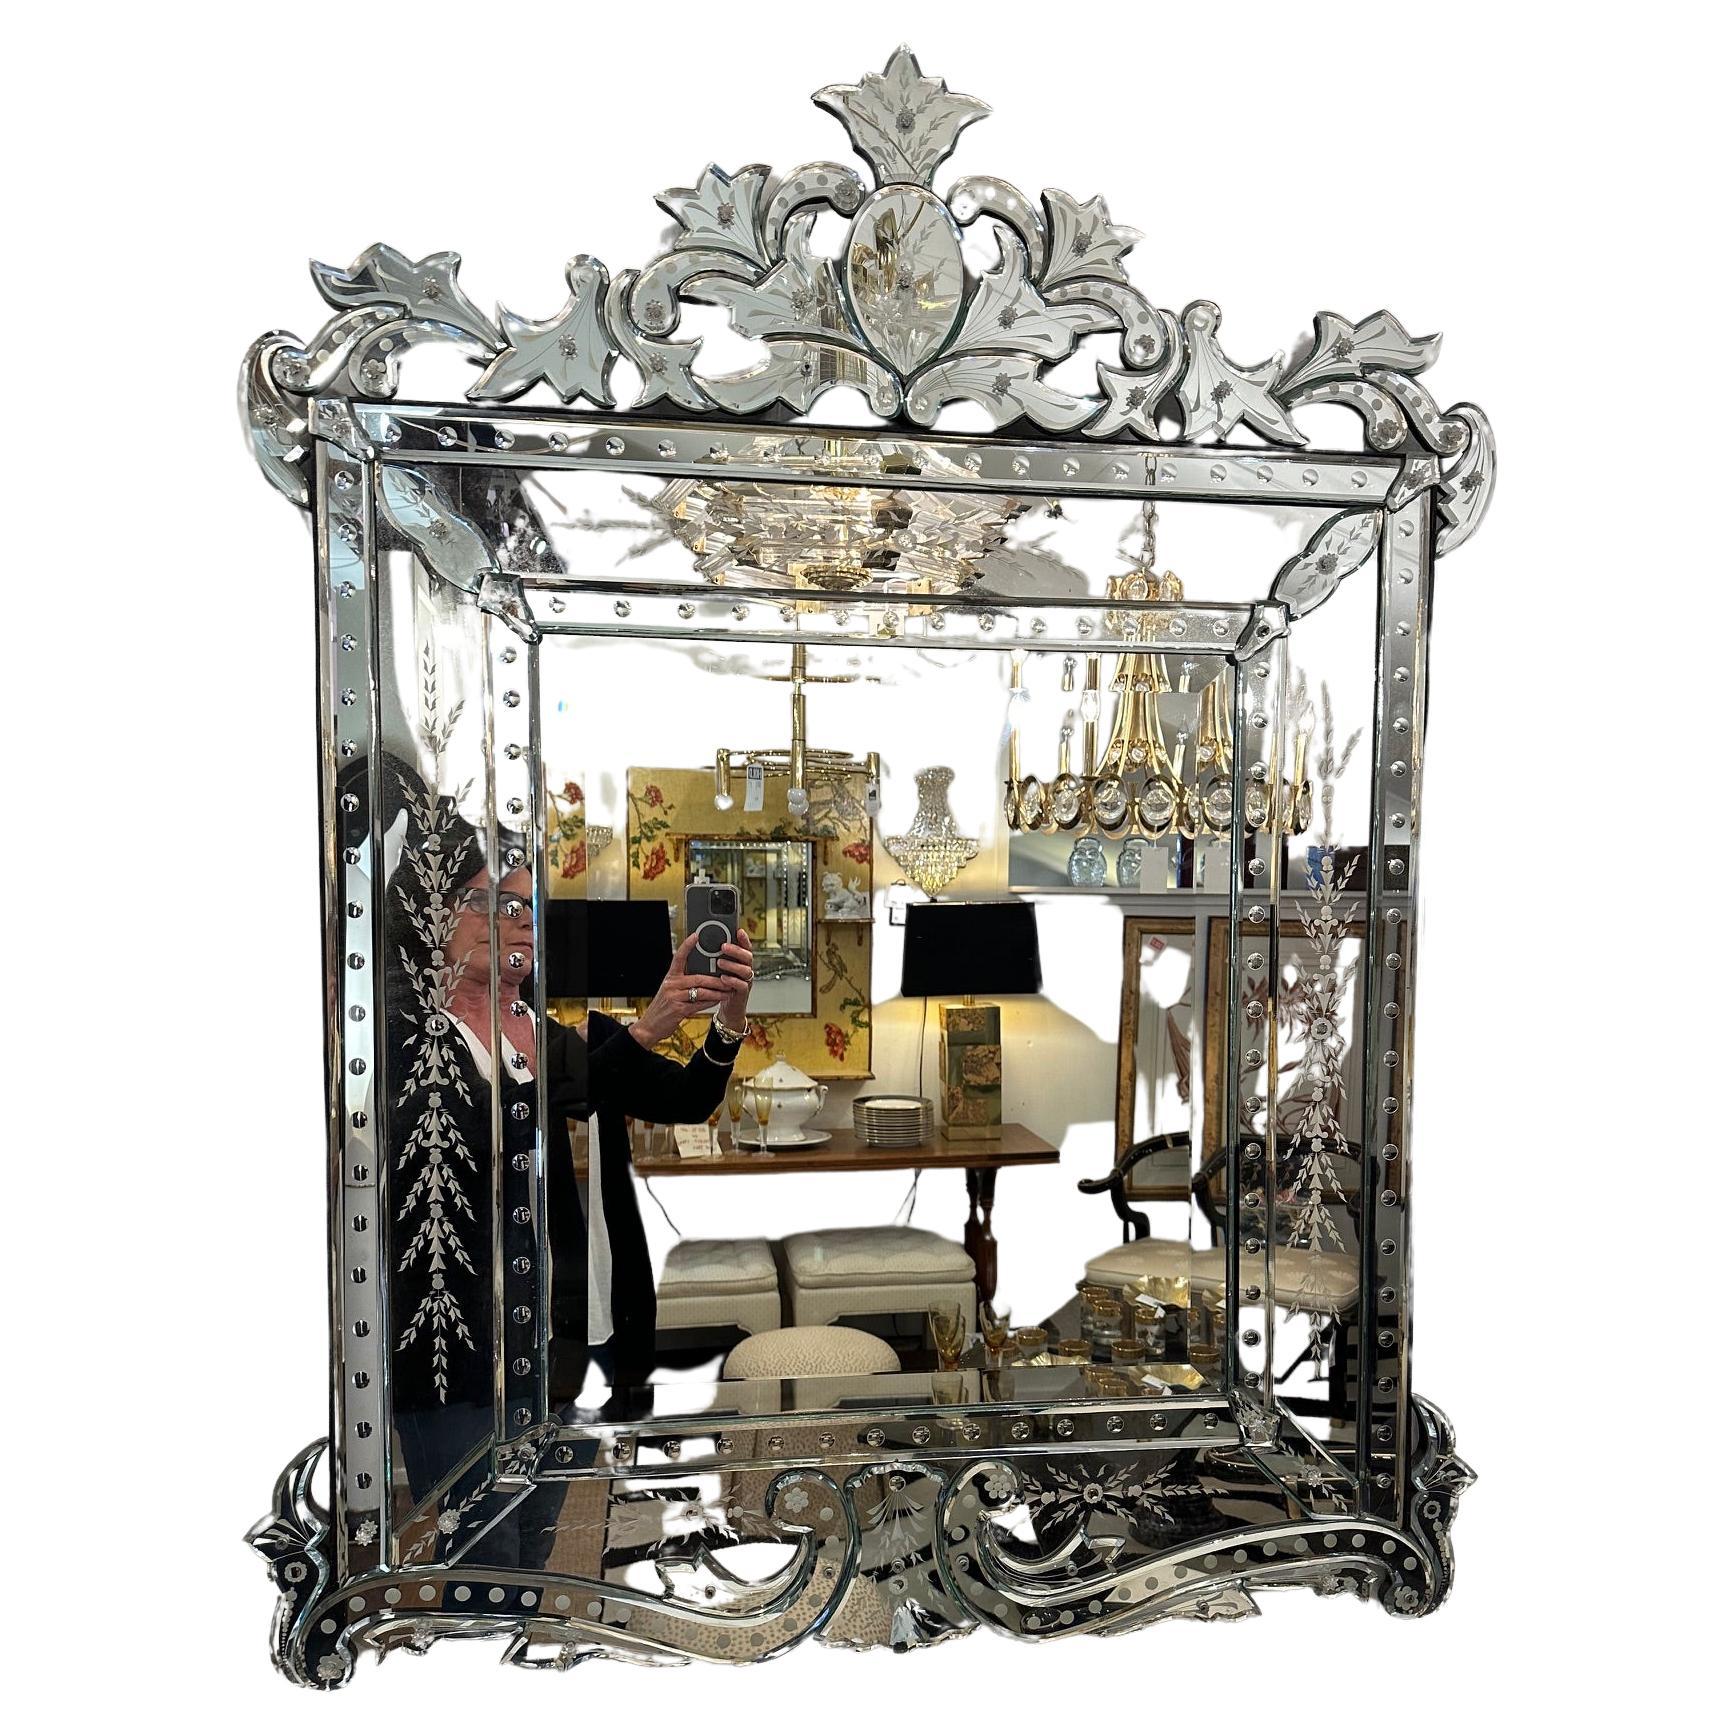 Auffallend glamouröser Spiegel im venezianischen Stil.